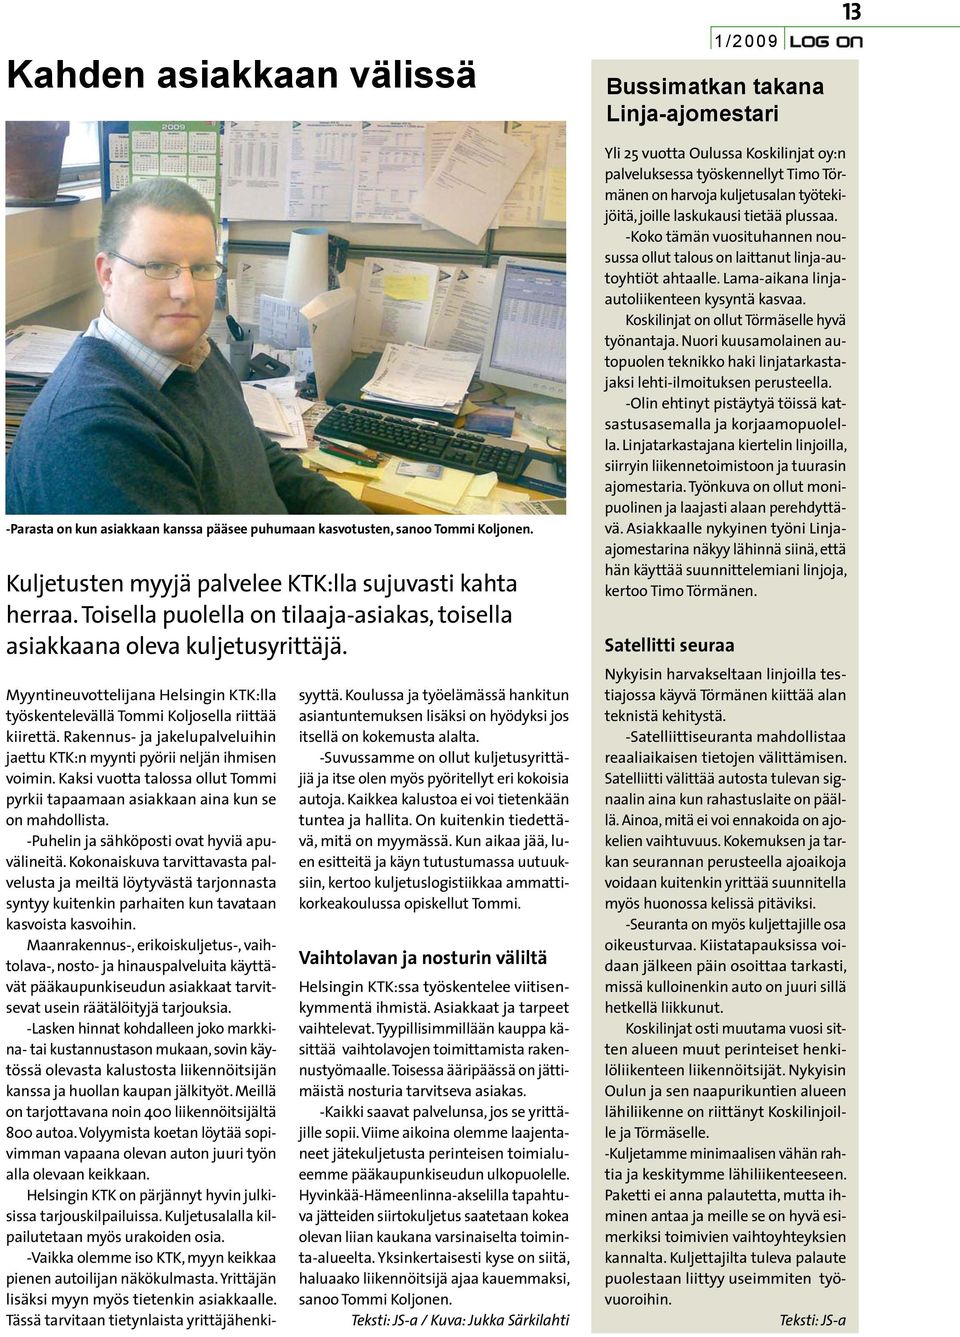 Myyntineuvottelijana Helsingin KTK:lla työskentelevällä Tommi Koljosella riittää kiirettä. Rakennus- ja jakelupalveluihin jaettu KTK:n myynti pyörii neljän ihmisen voimin.